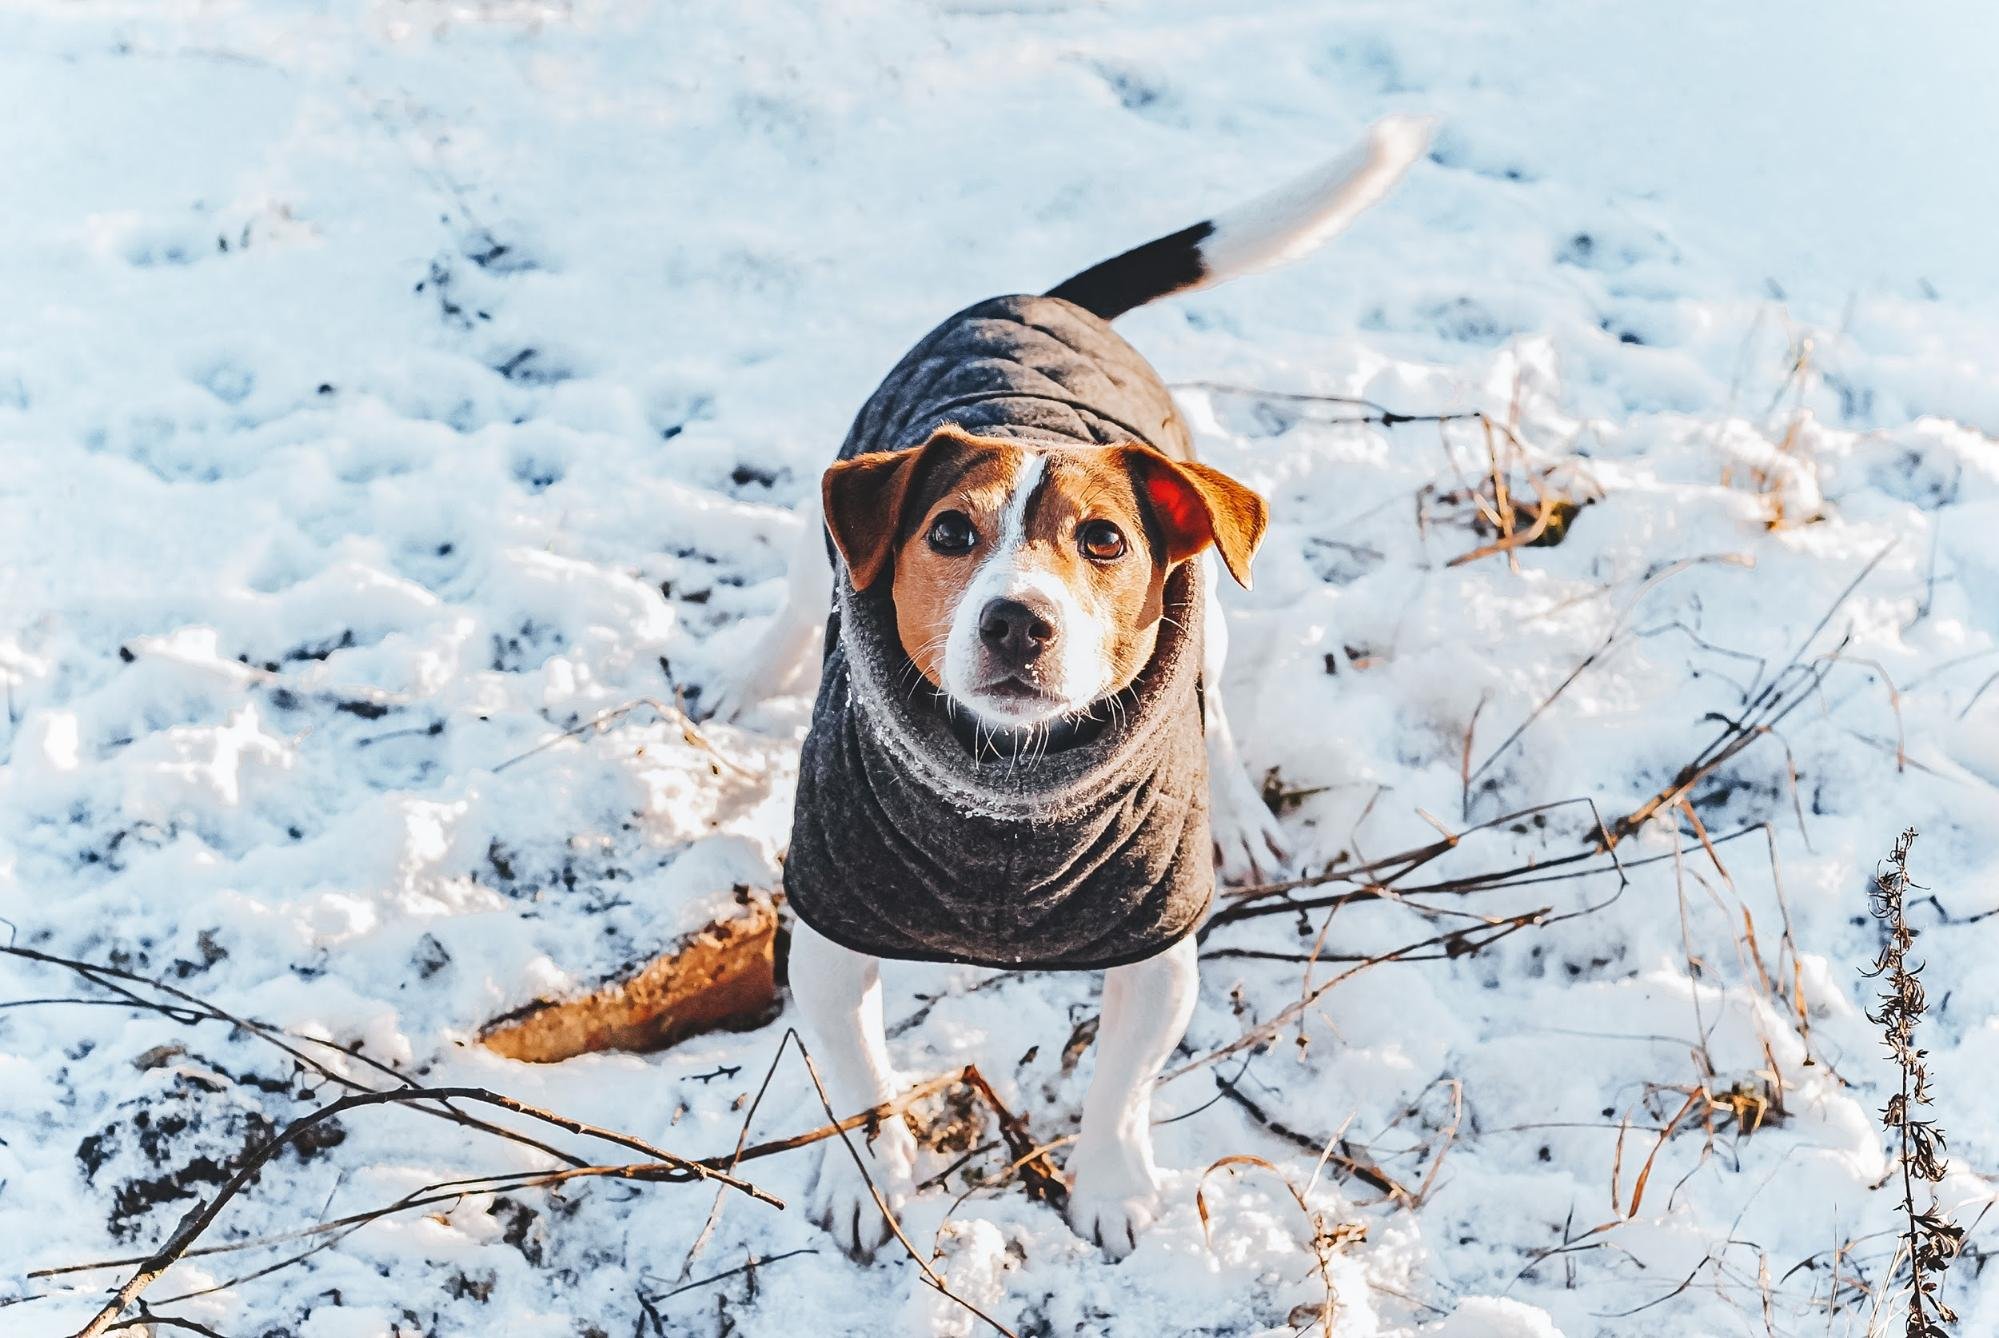 Одяг для собаки: примха чи необхідність? Як захистити улюбленця взимку